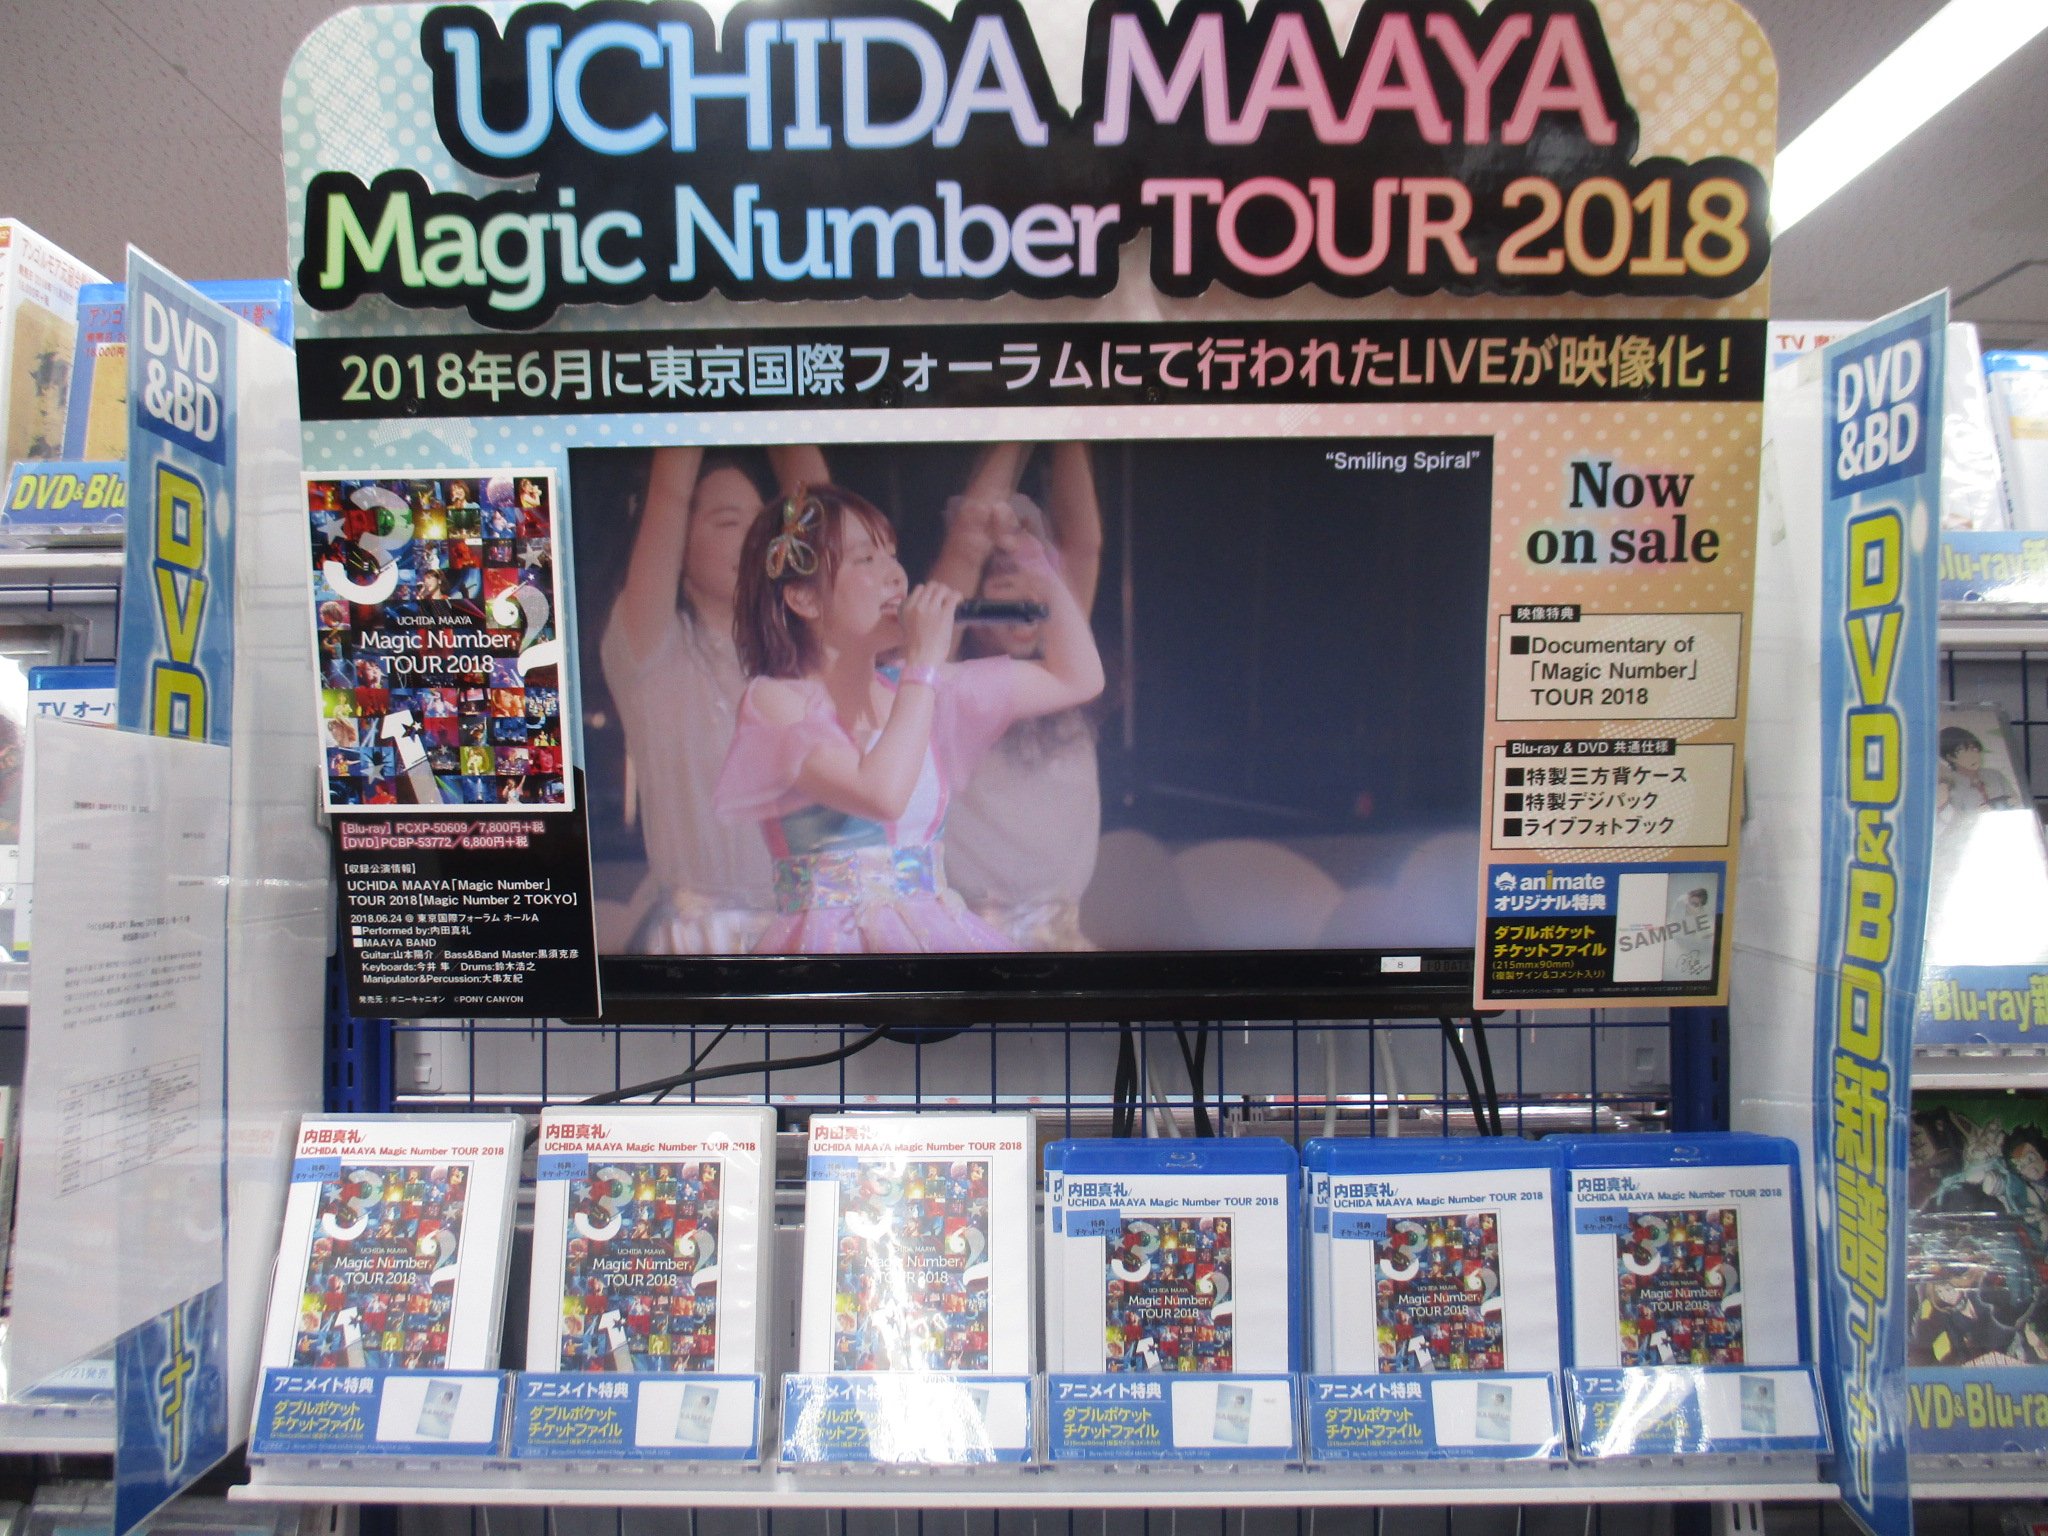 アニメイト池袋本店 7f商品情報 Blu Ray Dvd Uchida Maaya Magic Number Tour 18 好評発売中 アニメイト特典は ダブルポケットチケットファイル のお渡しアニ 特典は無くなり次第終了のため ご希望の方はぜひお早めにお買い求めください